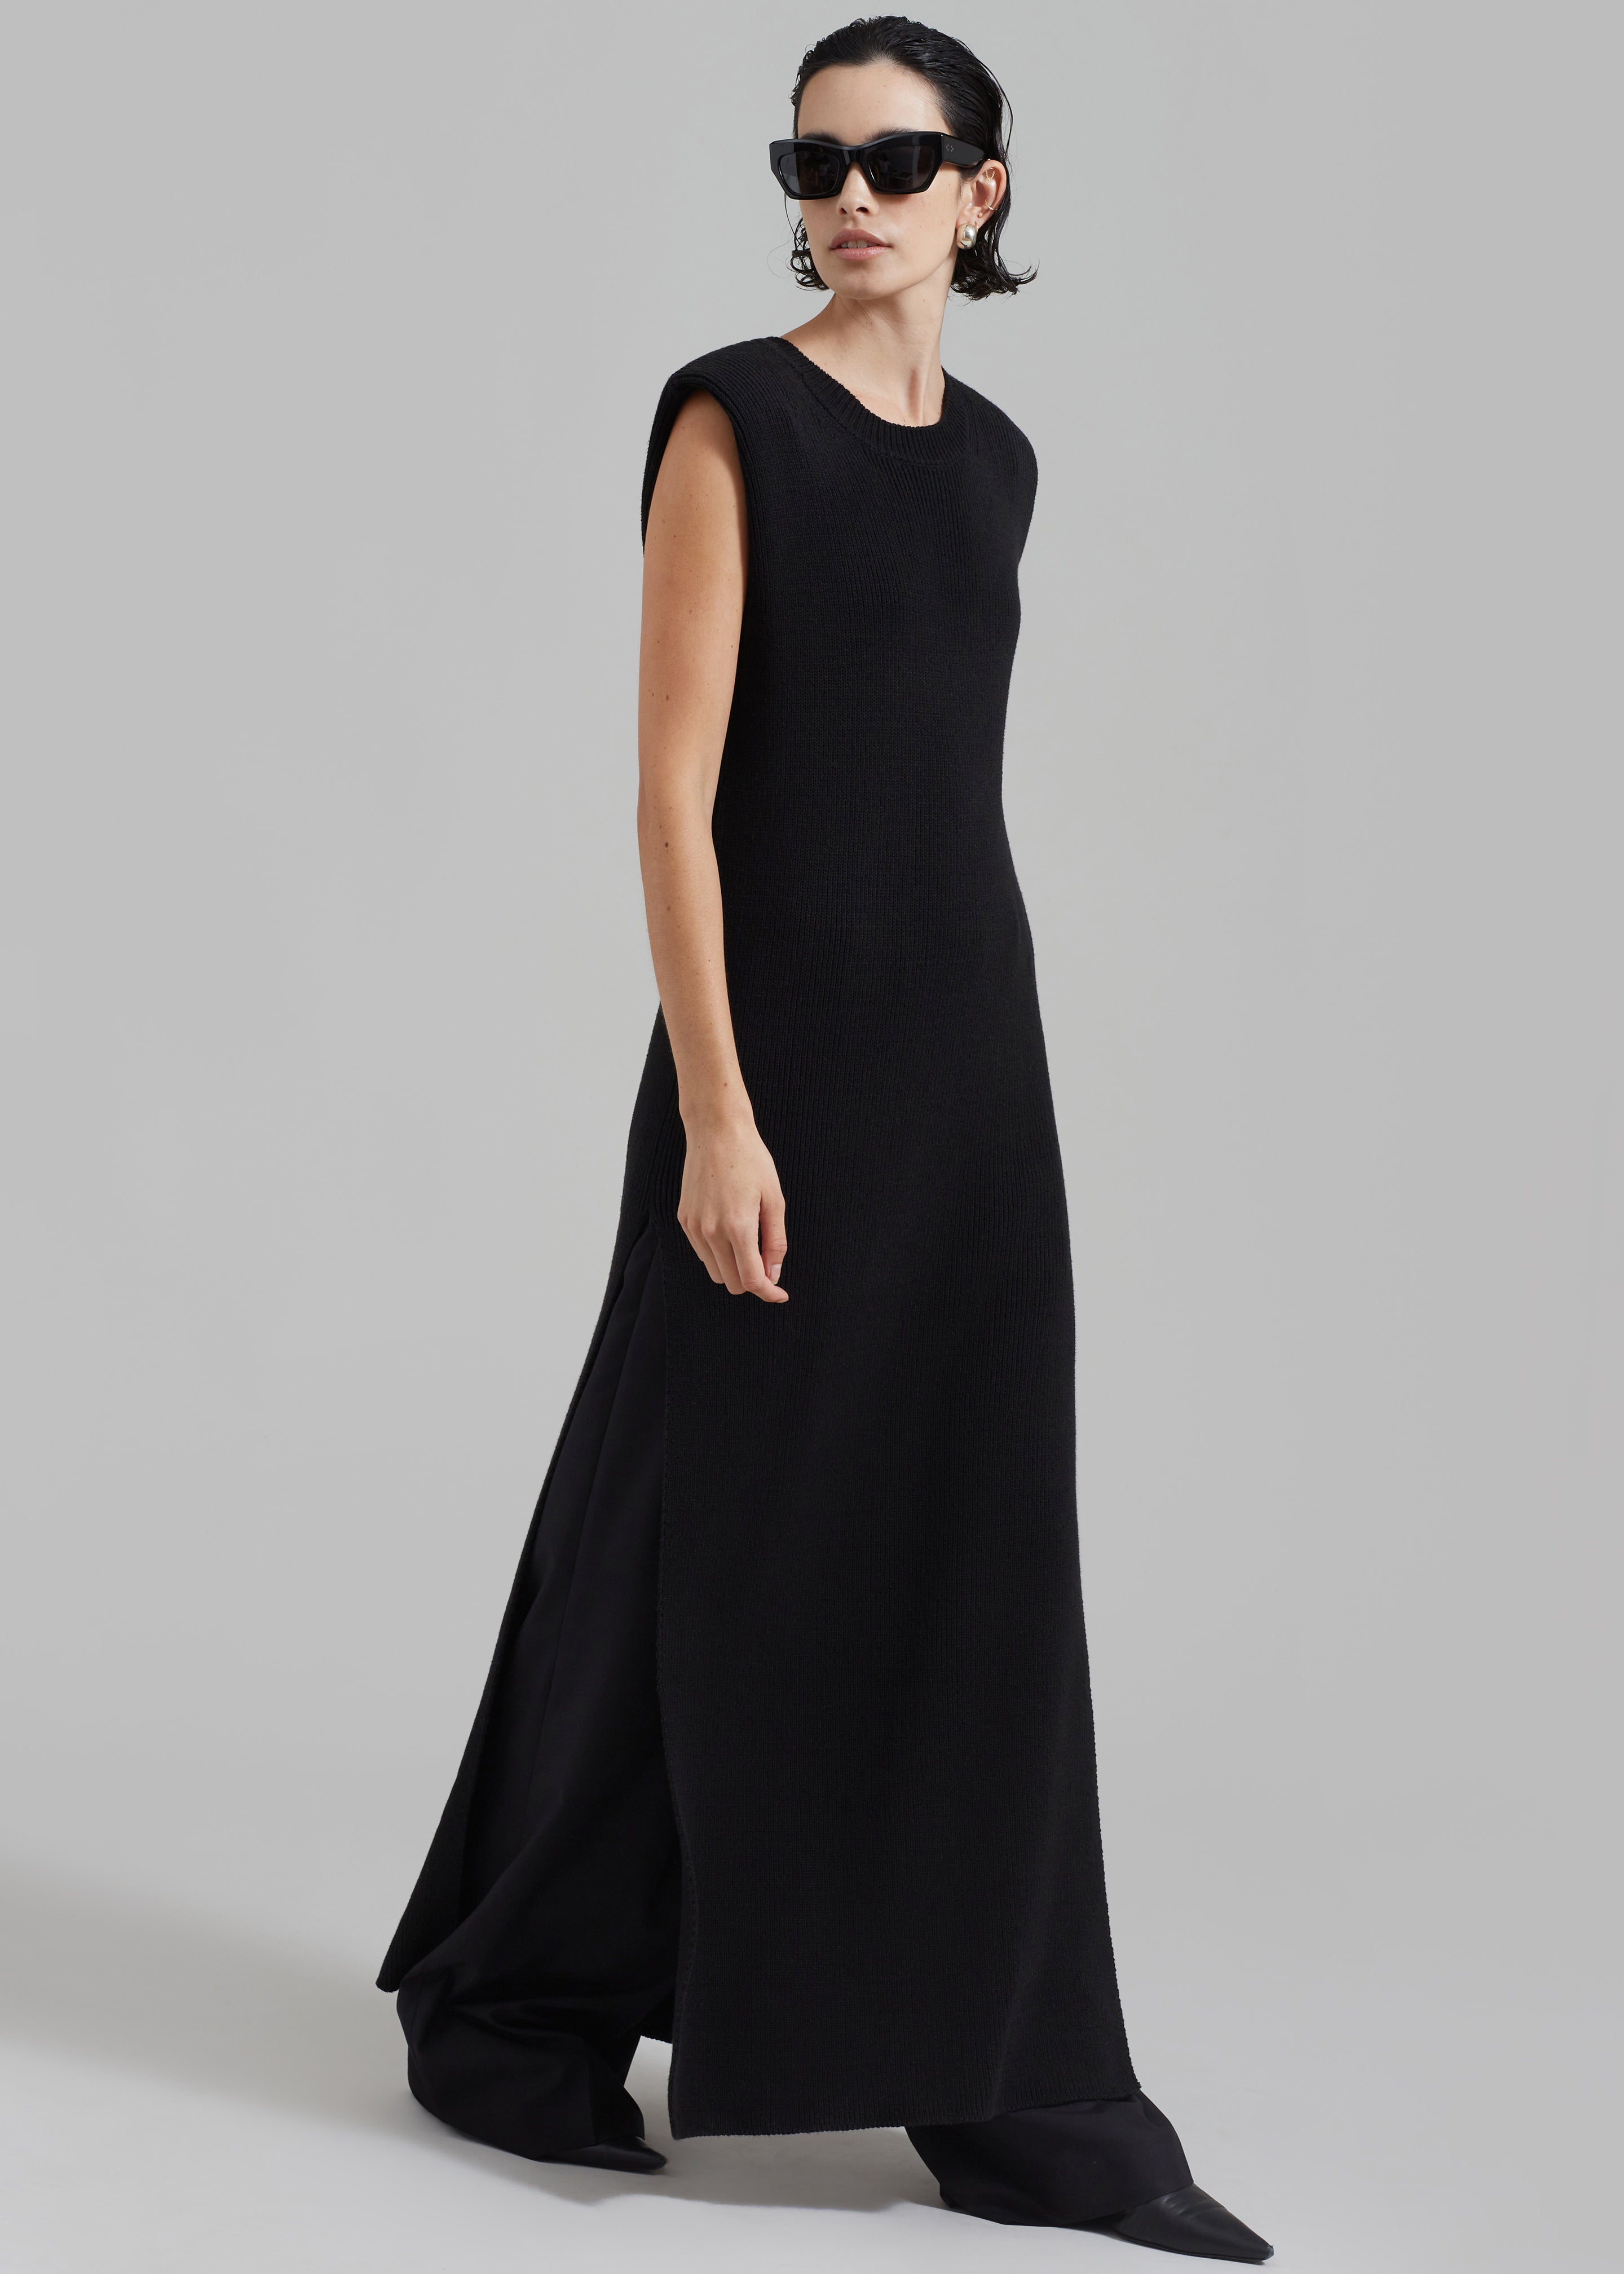 Wren Sleeveless Knit Dress - Black - 6